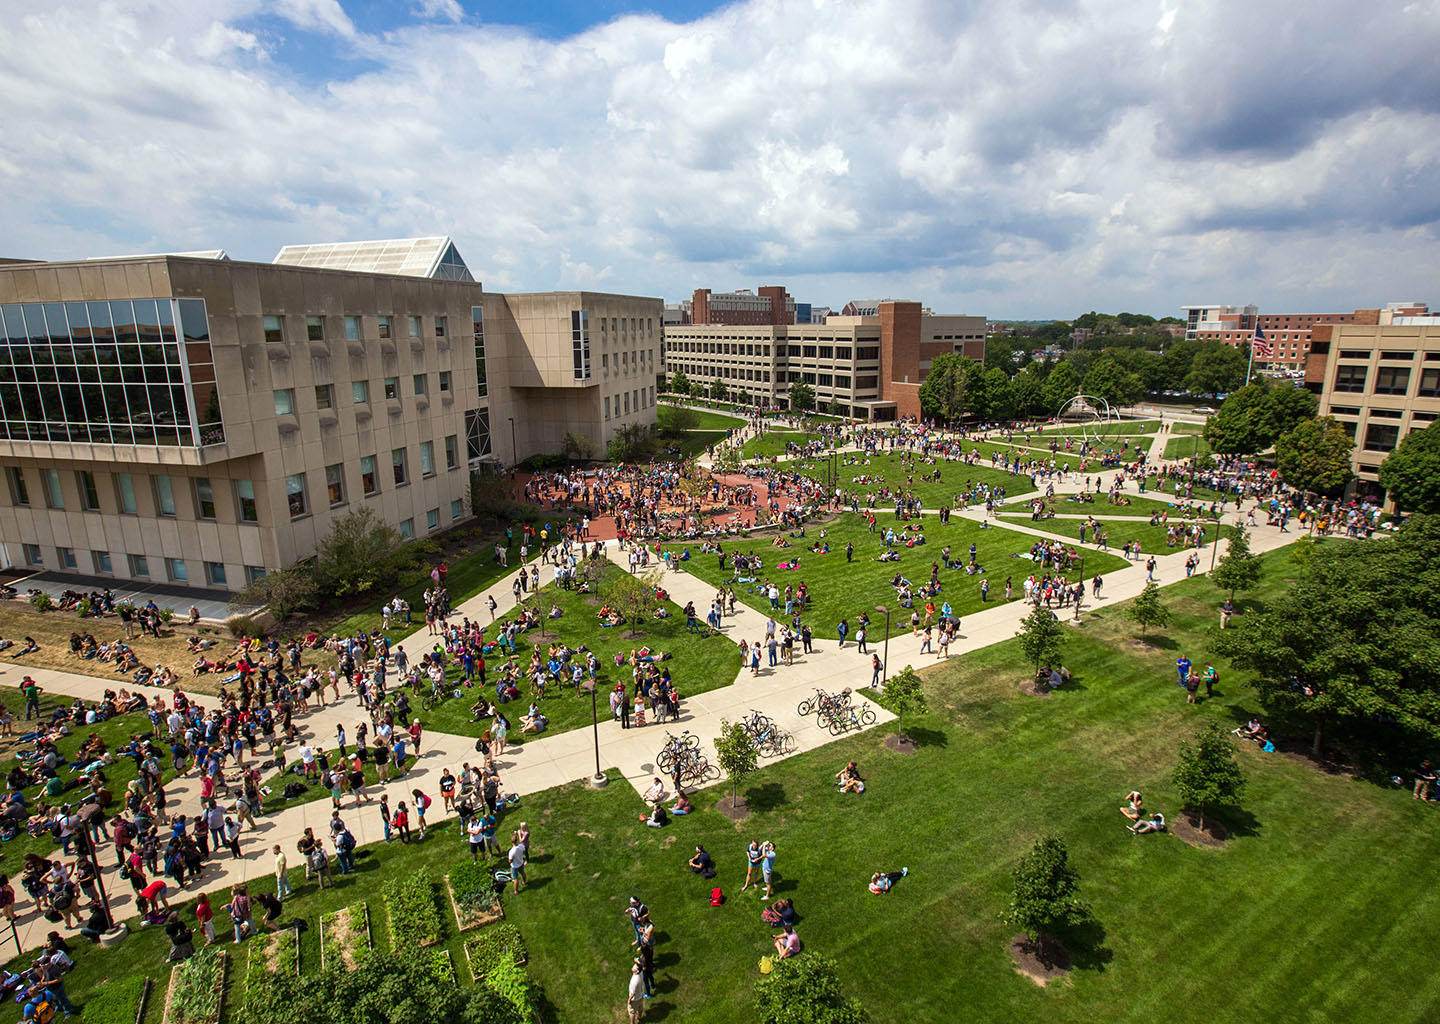 Indiana University Purdue University Indianapolis, USA - Ranking